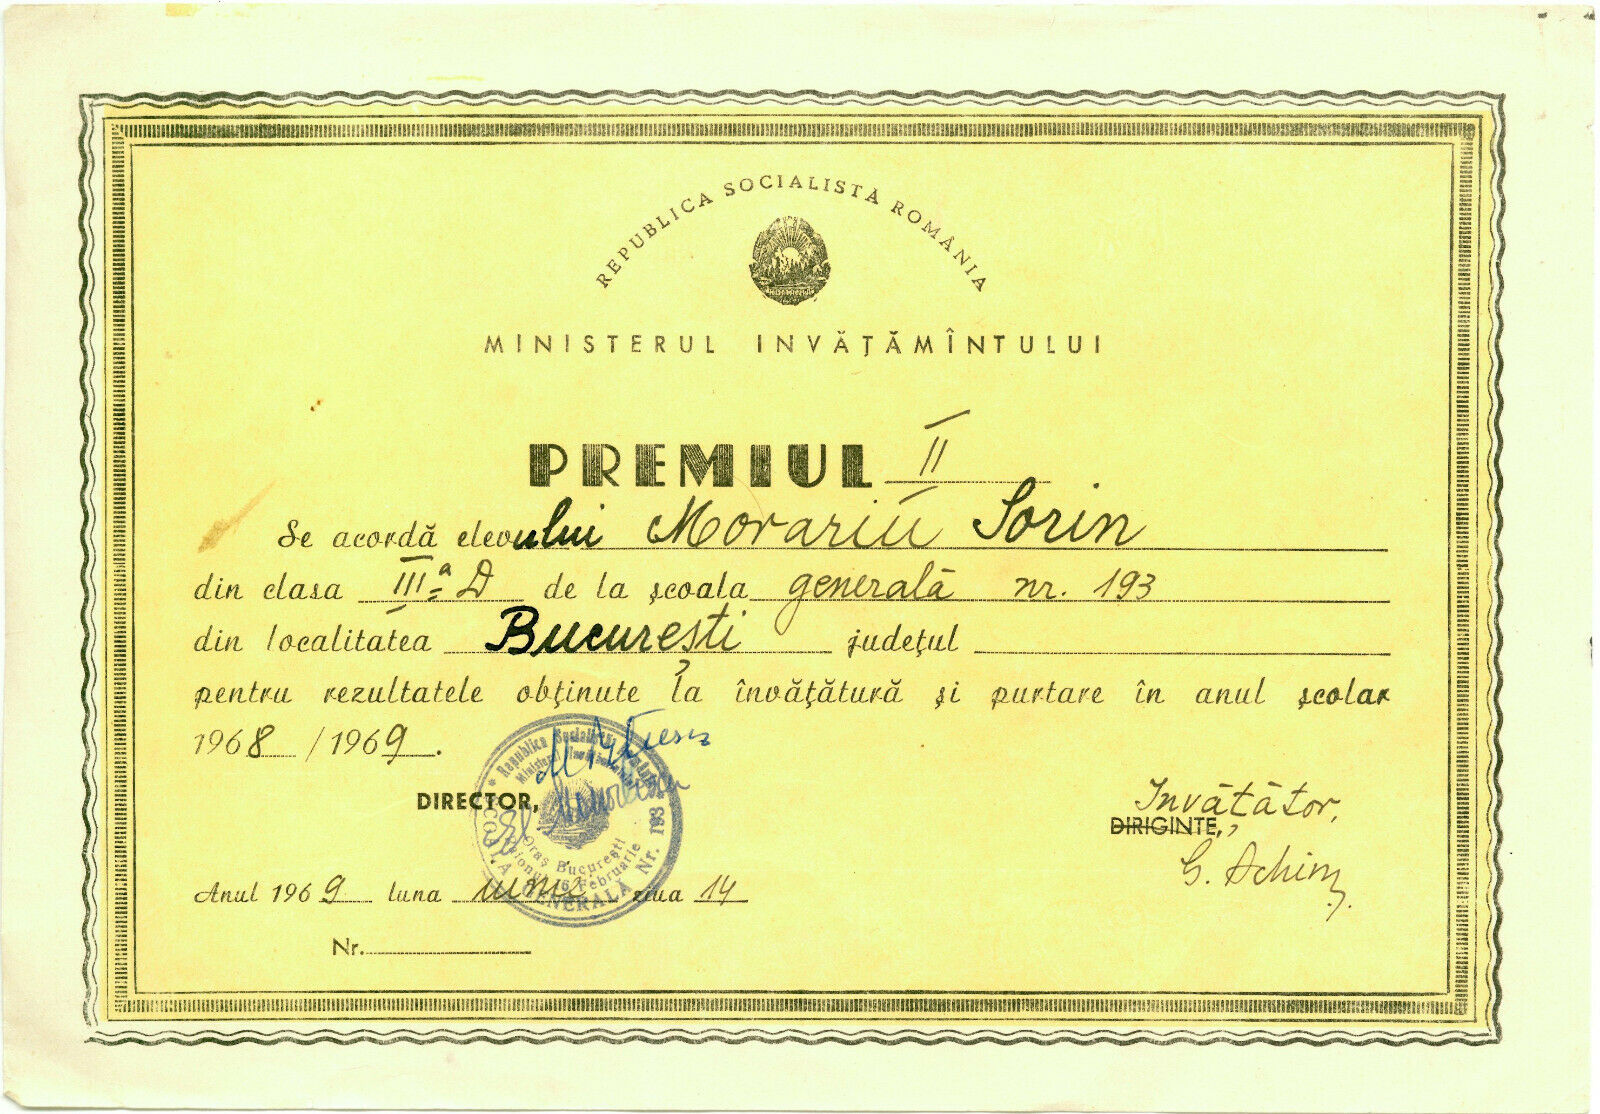 Romania, 1969, School Prize Diploma - No. 193 Bucuresti, Rsr